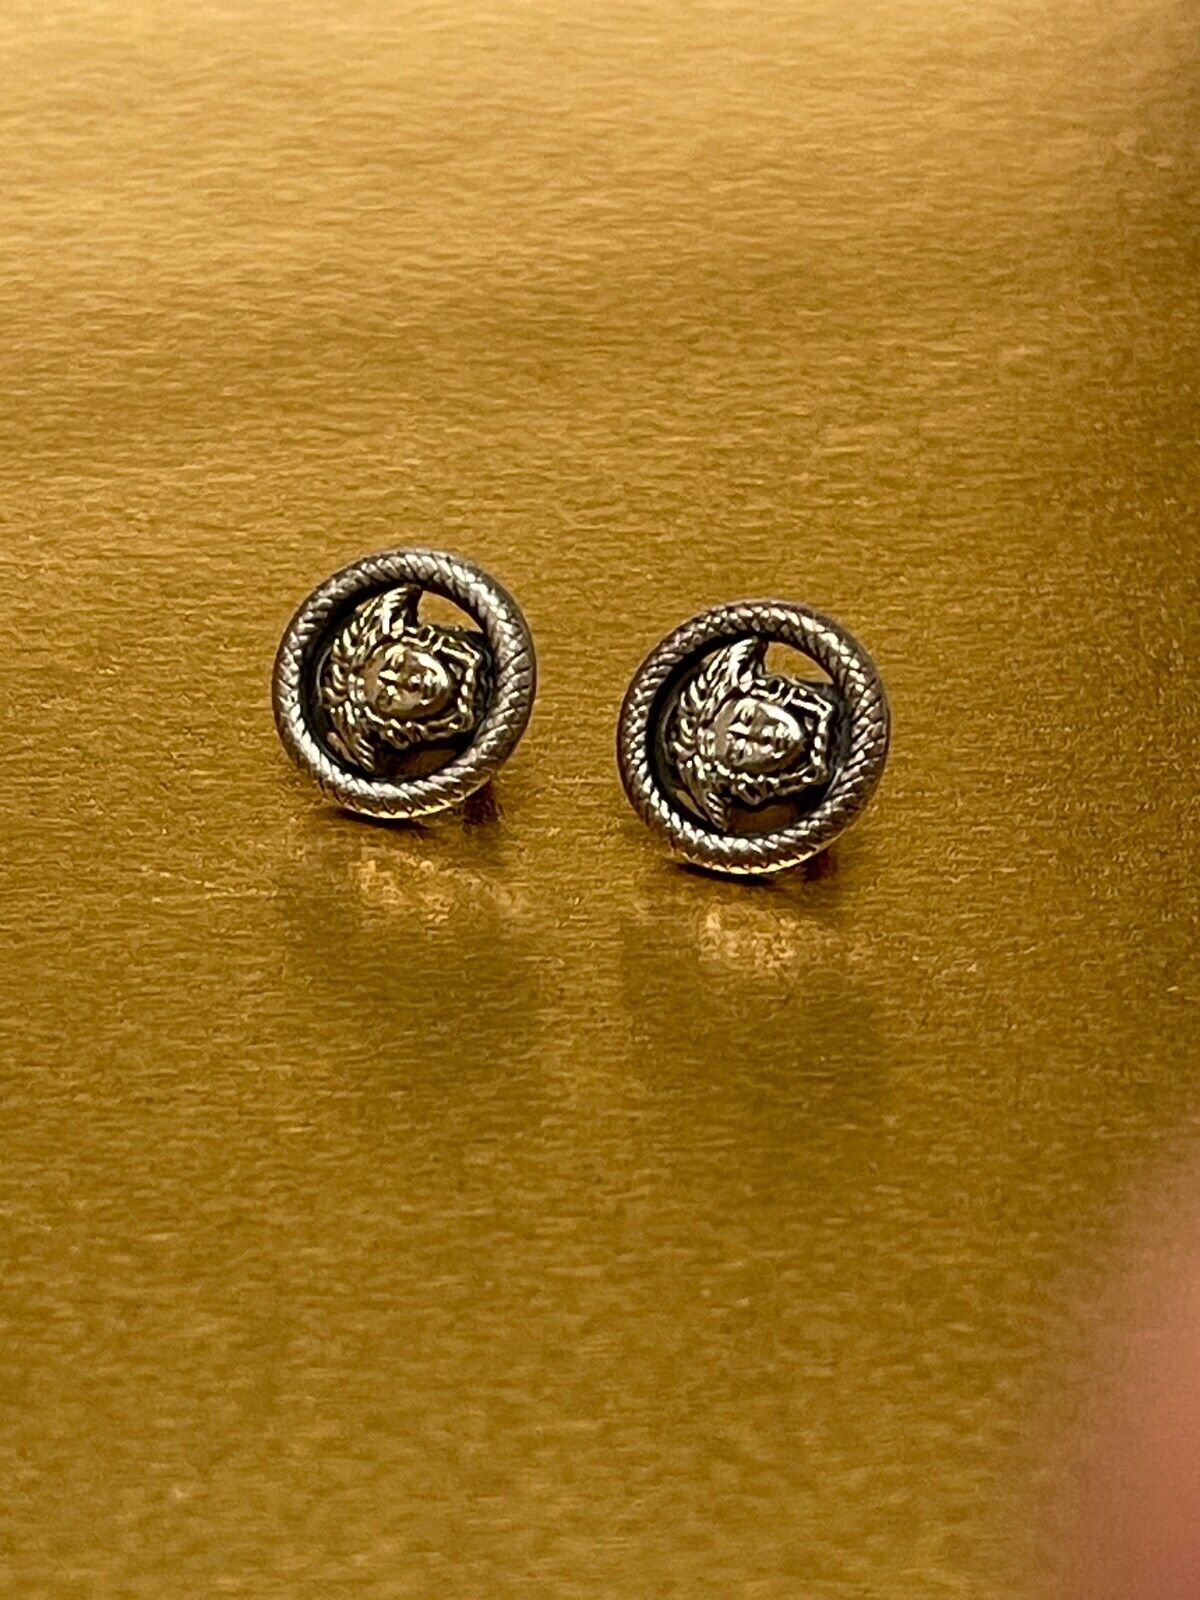 VERSACE Medusa Head 13mm Metal Buttons (2) Authentic Gianni Versace Vintage